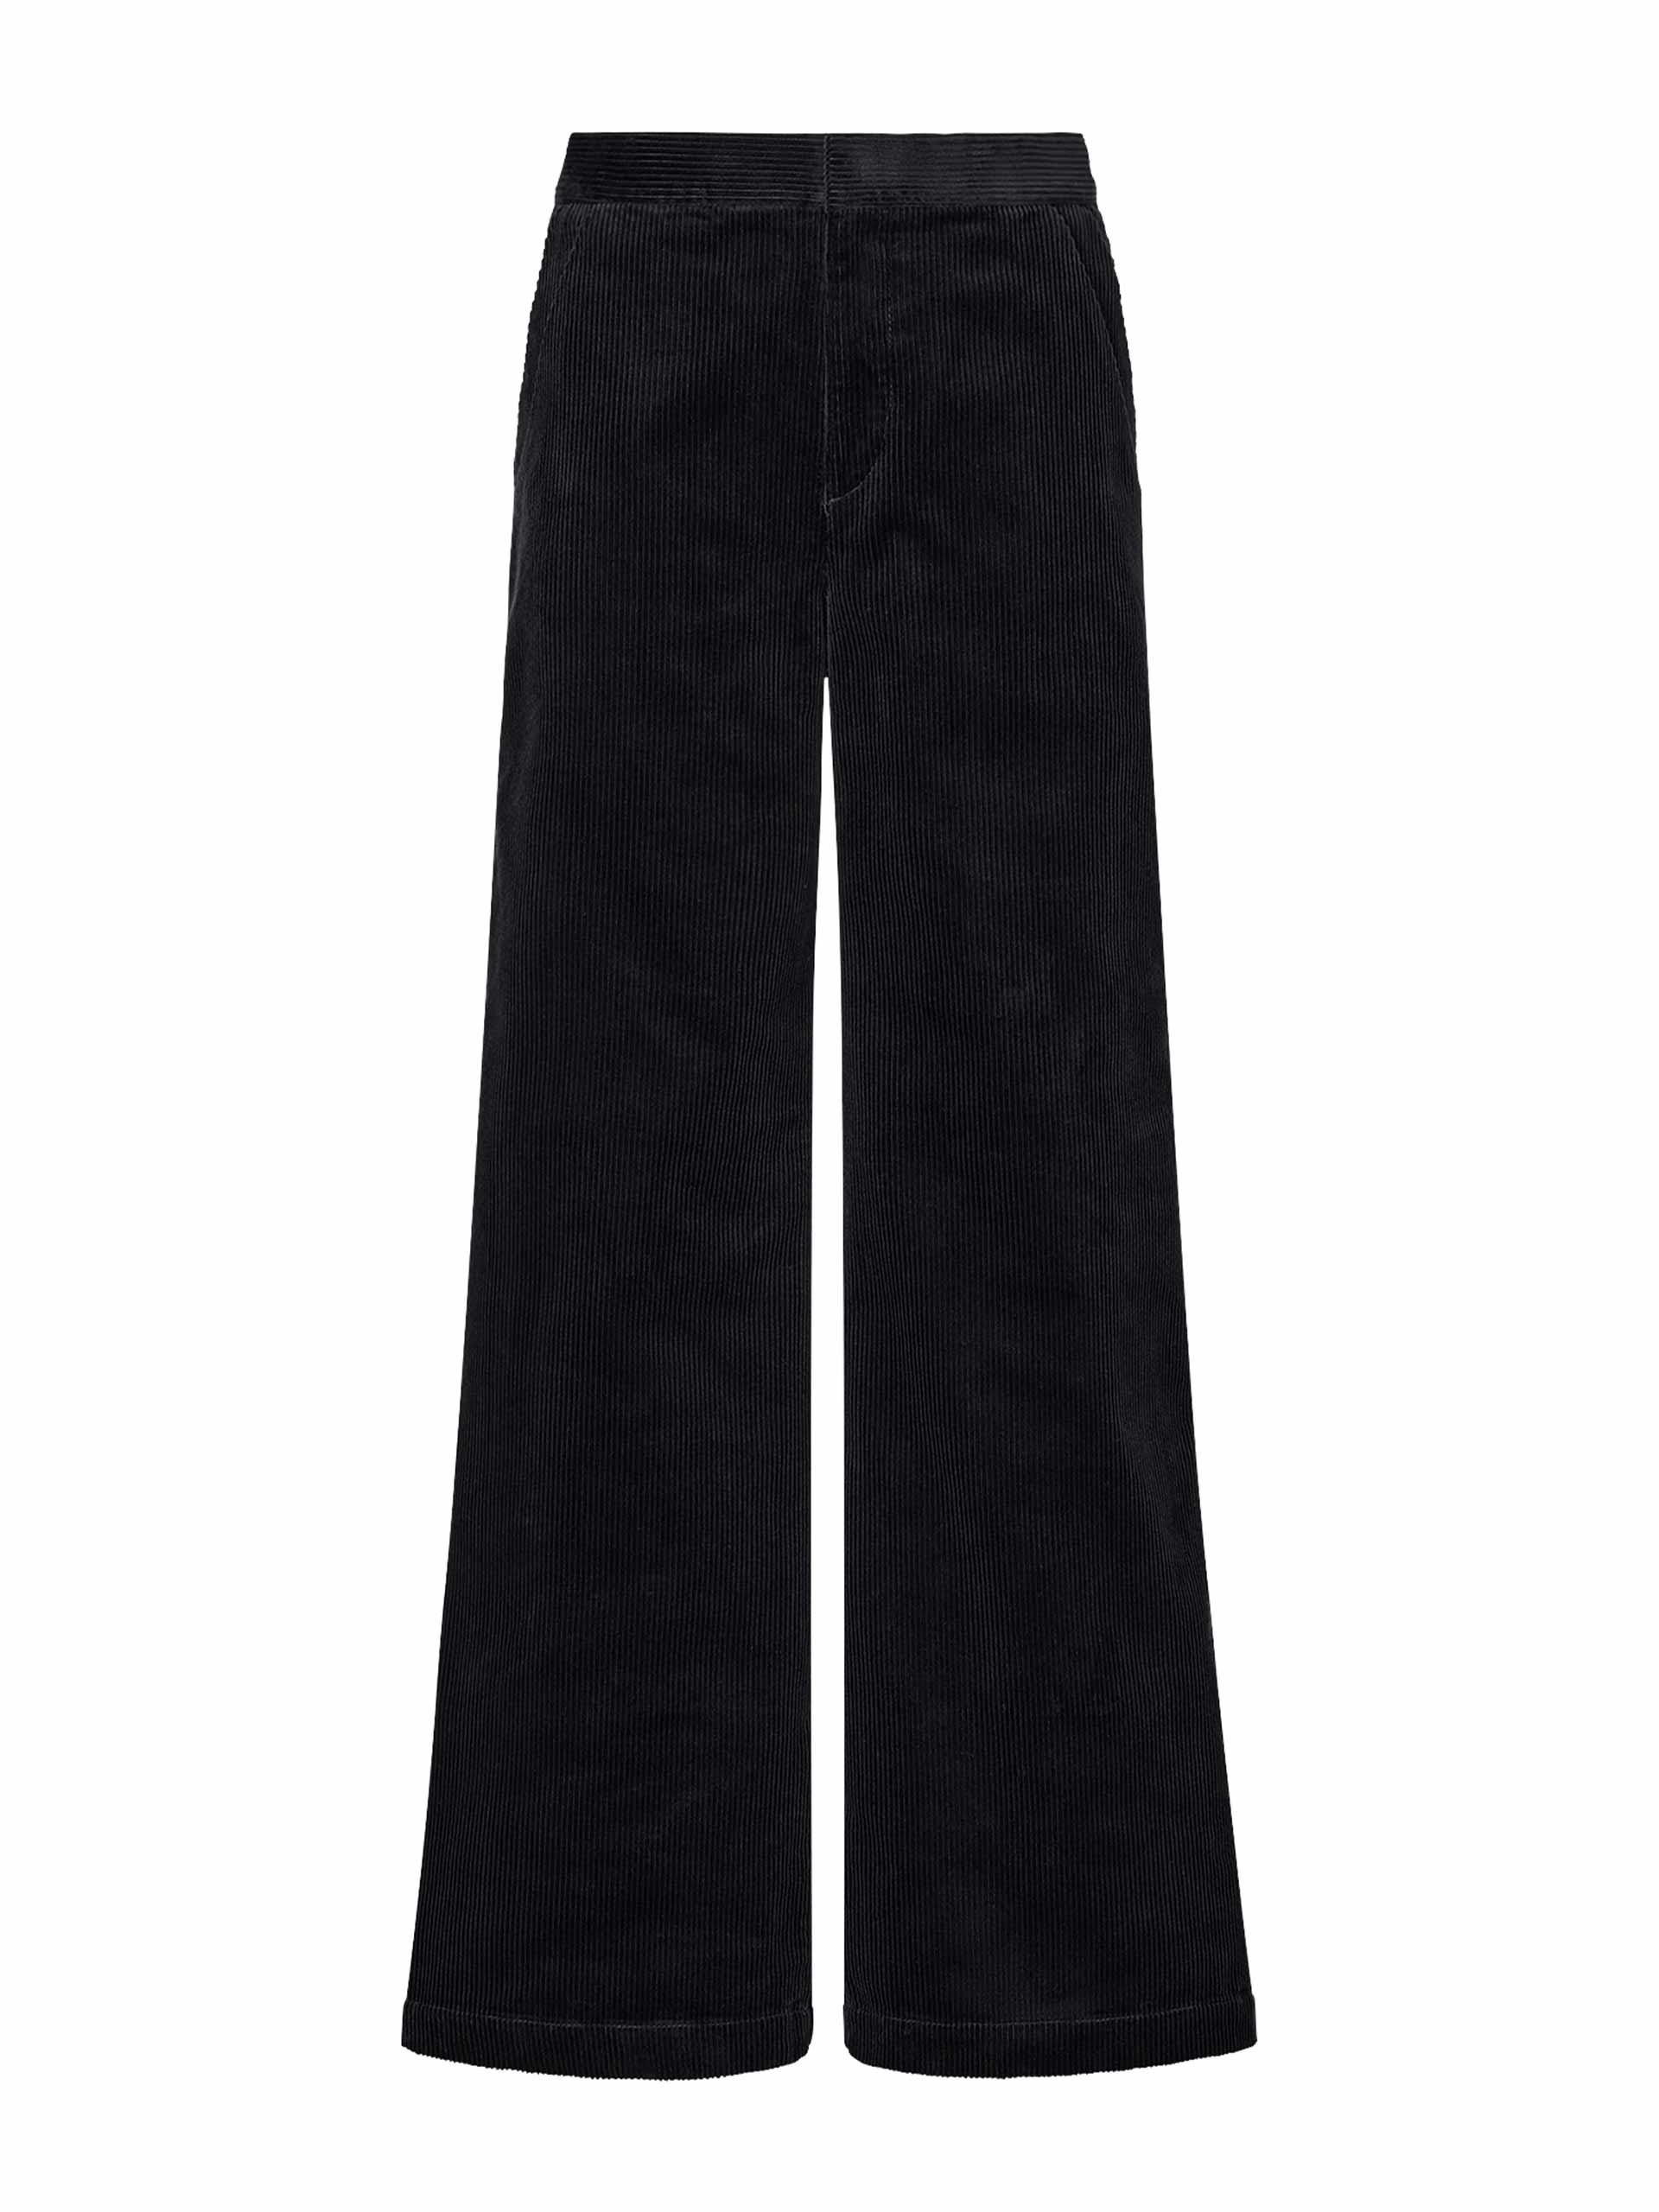 Black corduroy wide leg trousers